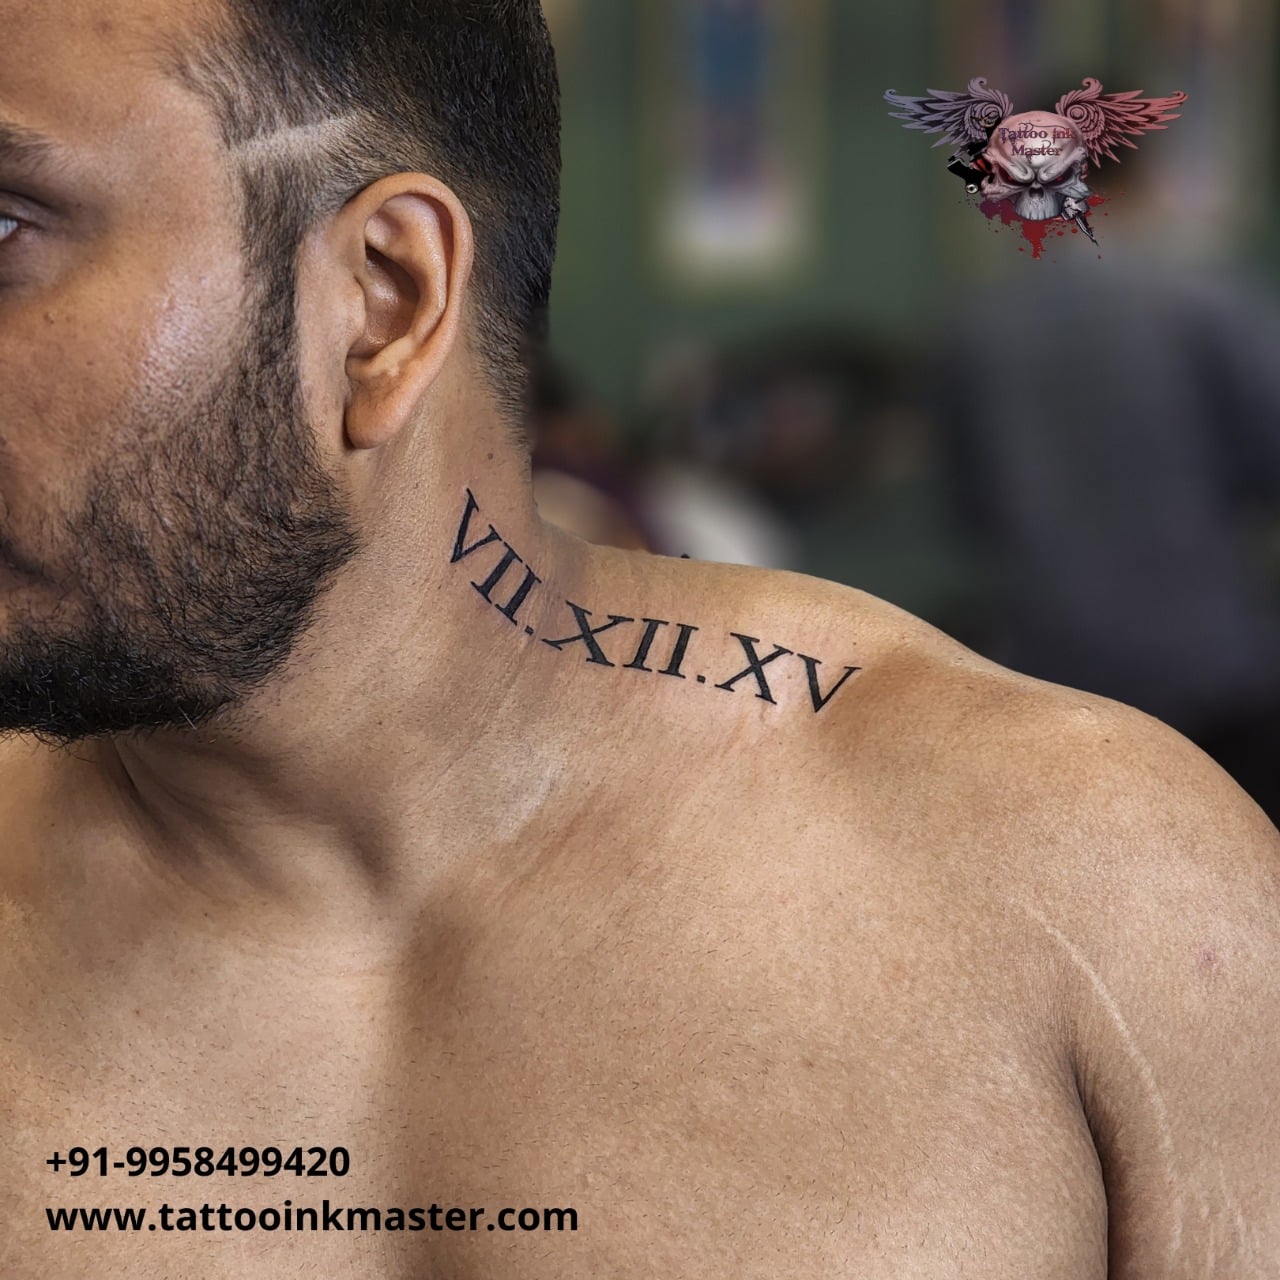 Buy Custom Roman Numerals Temporary Tattoo / Custom Temporary Tattoo Online  in India - Etsy